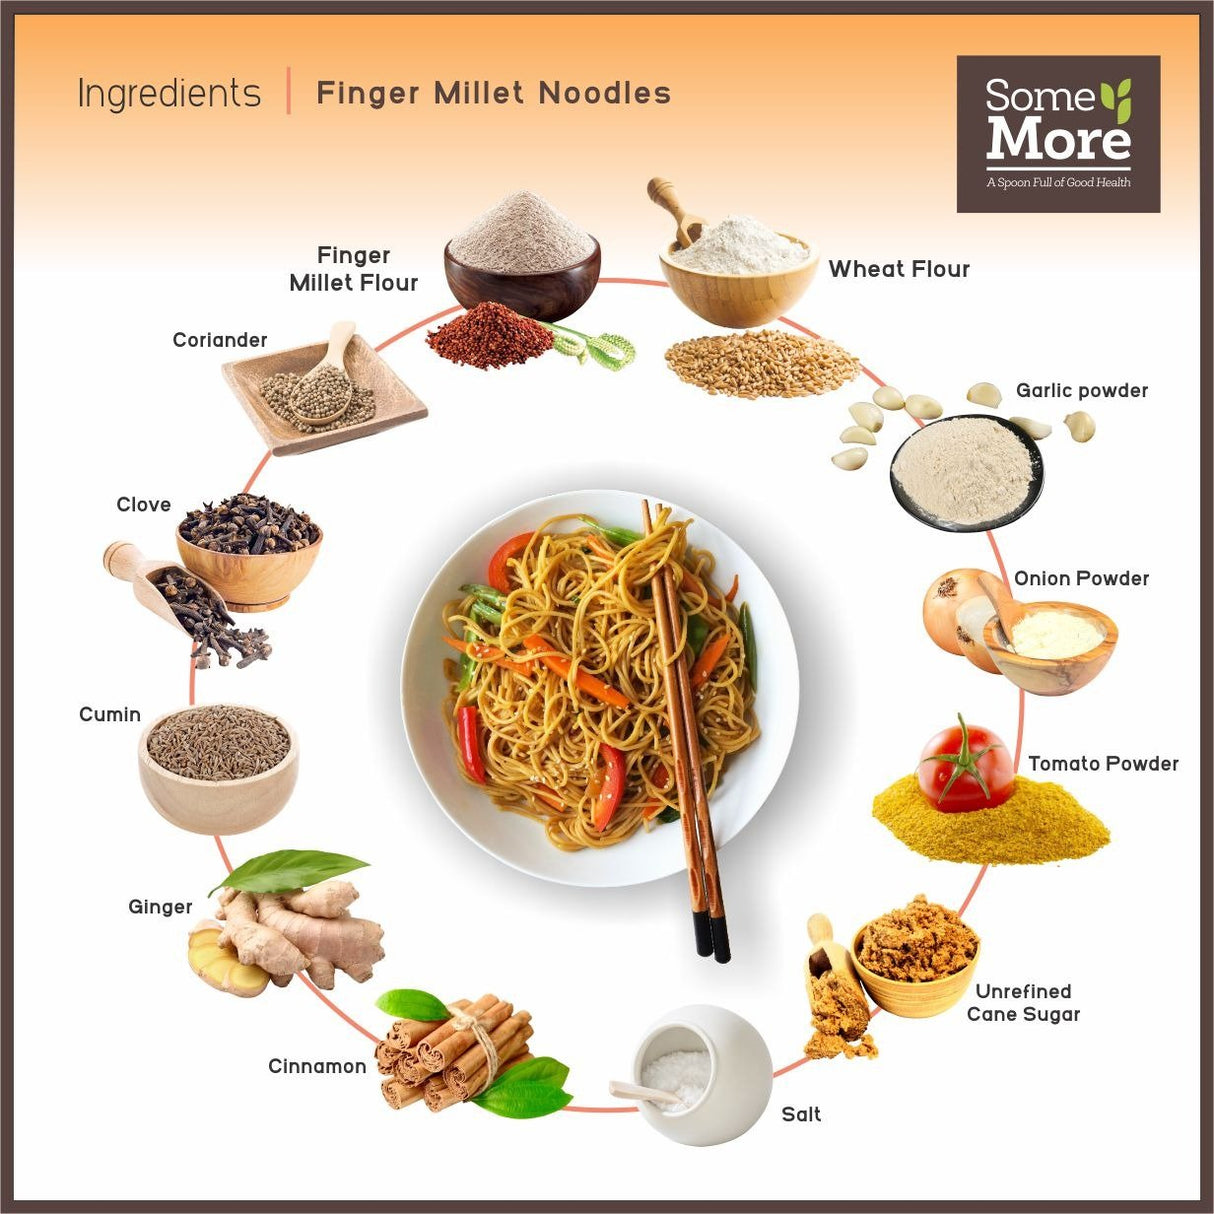 Instant Noodles: Finger Millet (Ragi) - Nourify